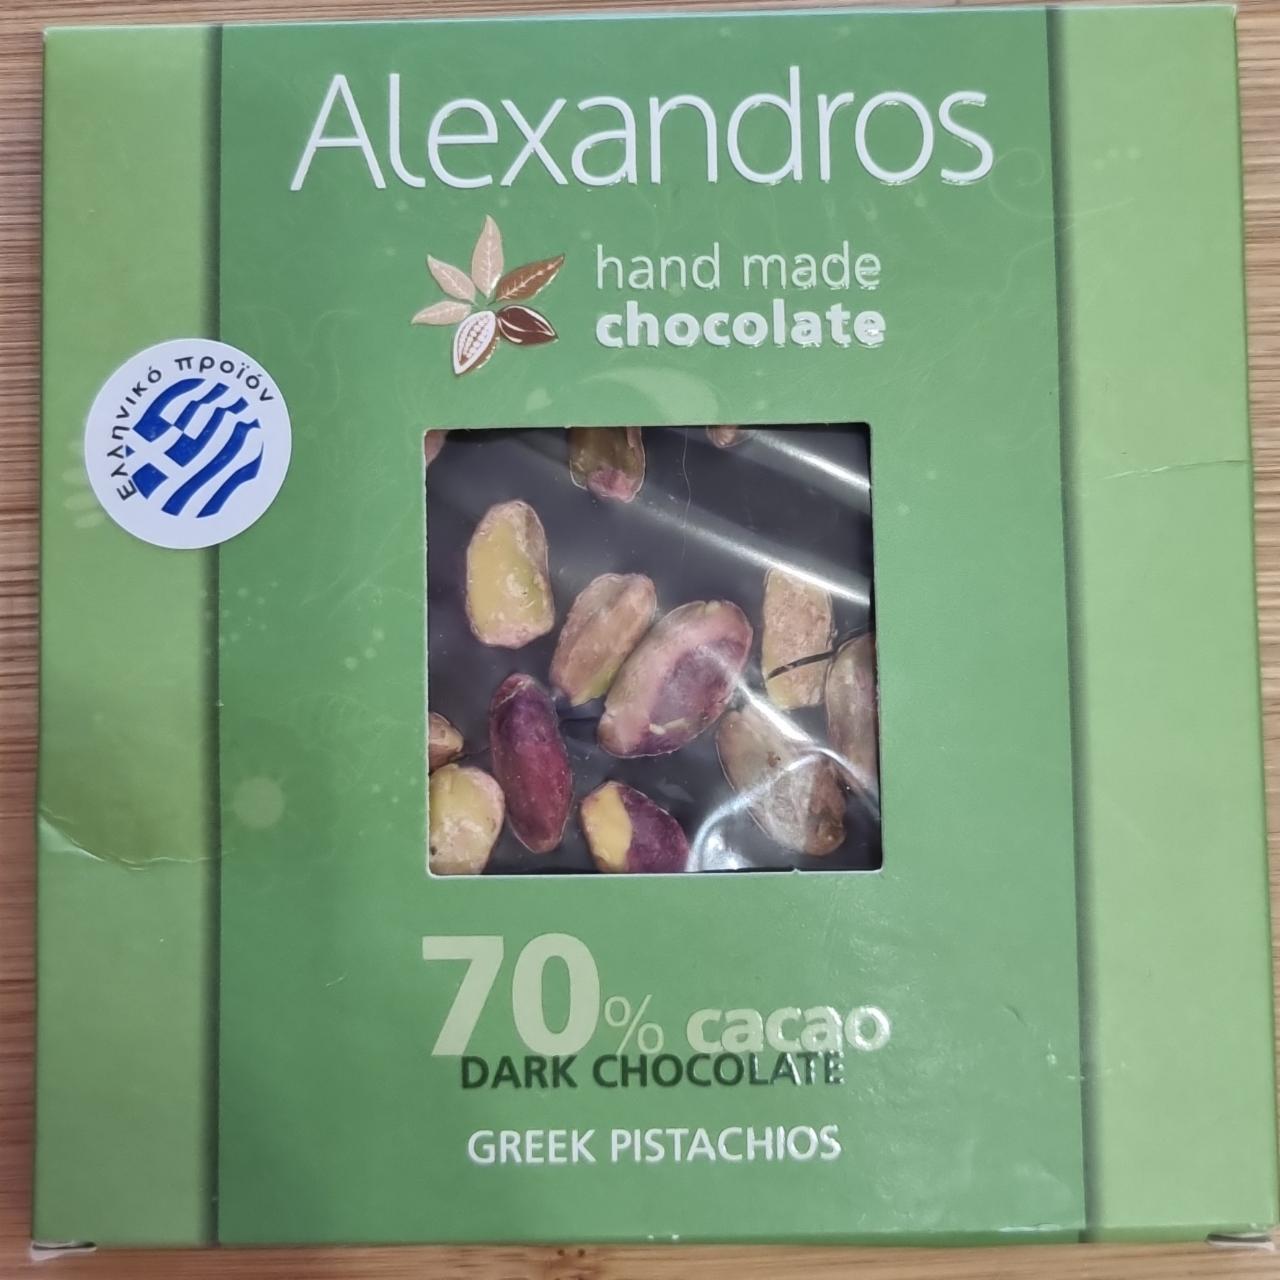 Fotografie - Hand made chocolate 70% cacao Dark chocolate greek pistachios Alexandros